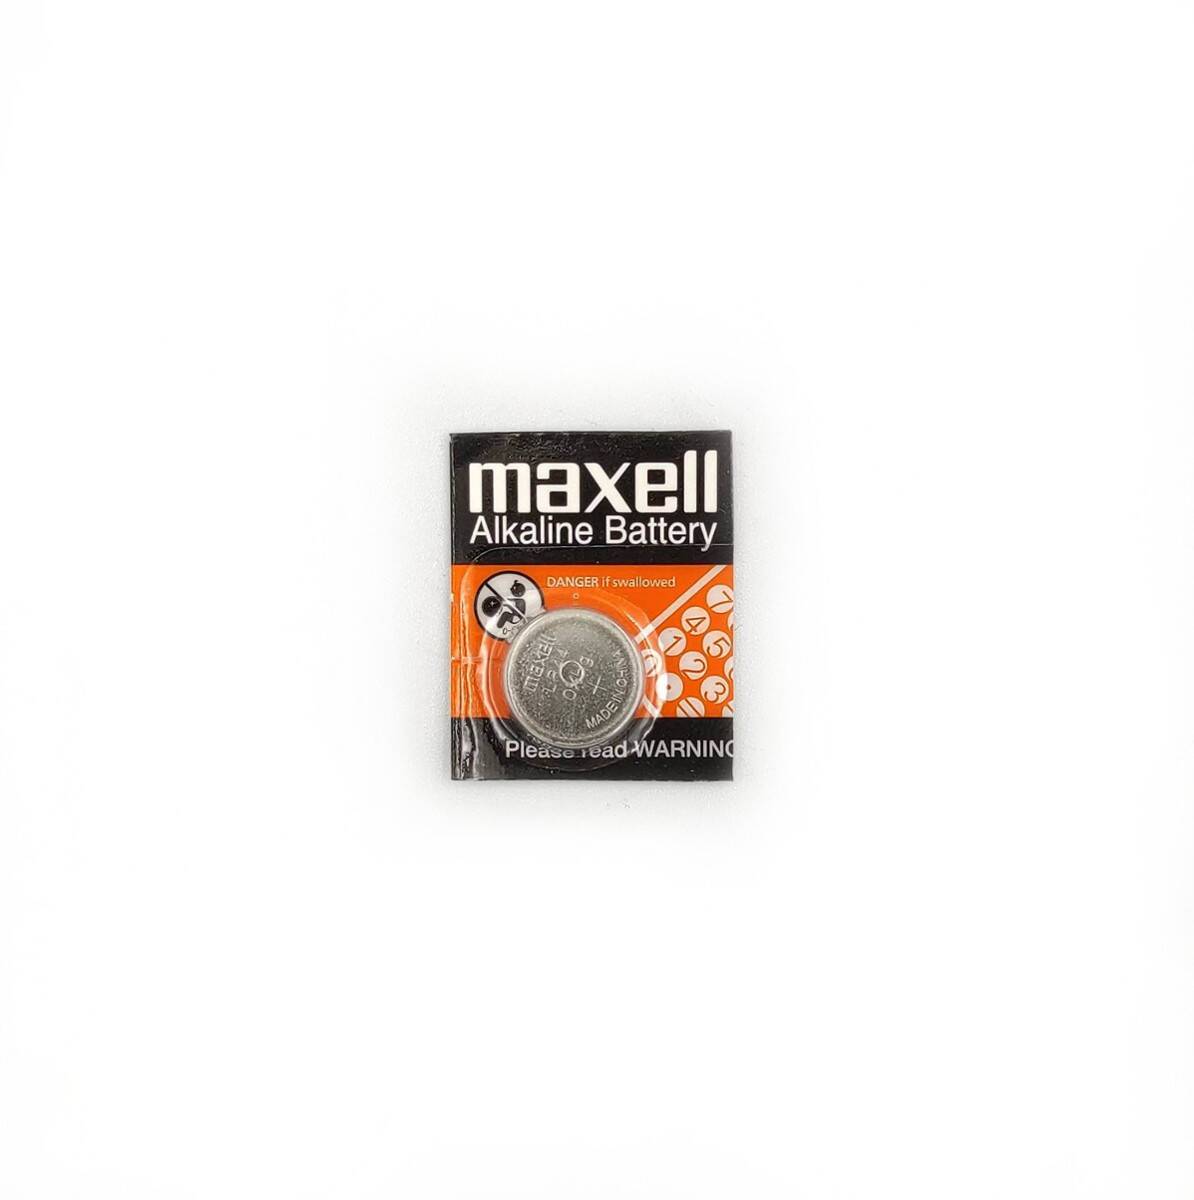 MAXELL bateria alkaliczna LR44 1,5V do przyrządów pomiarowych (zamiennik SR44SW) (Zdjęcie 1)